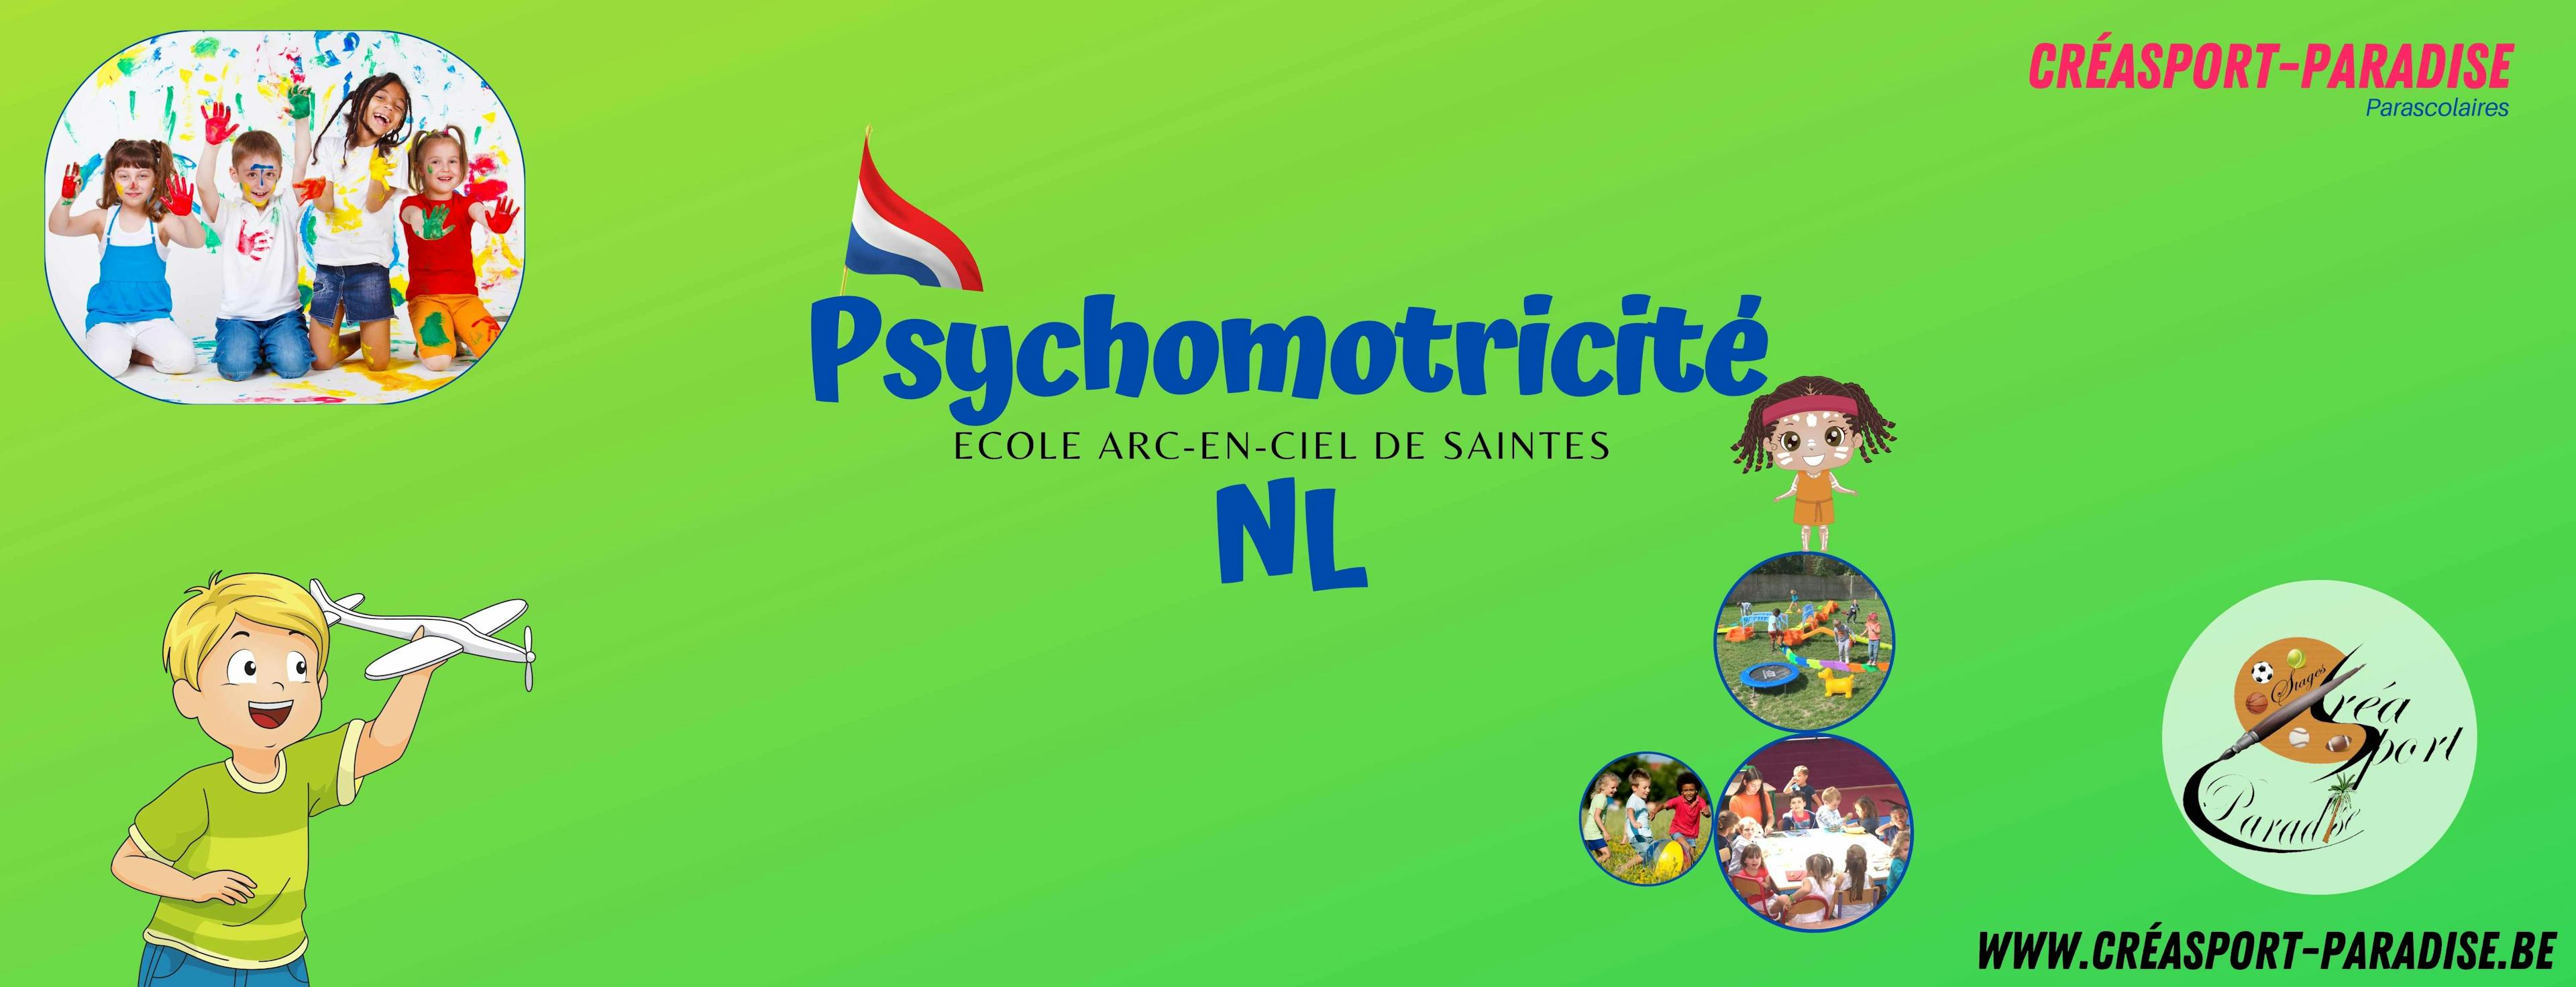 Parascolaires Ecole de Saintes - 15h20 JEUDI - Psychomotricité FR / NL